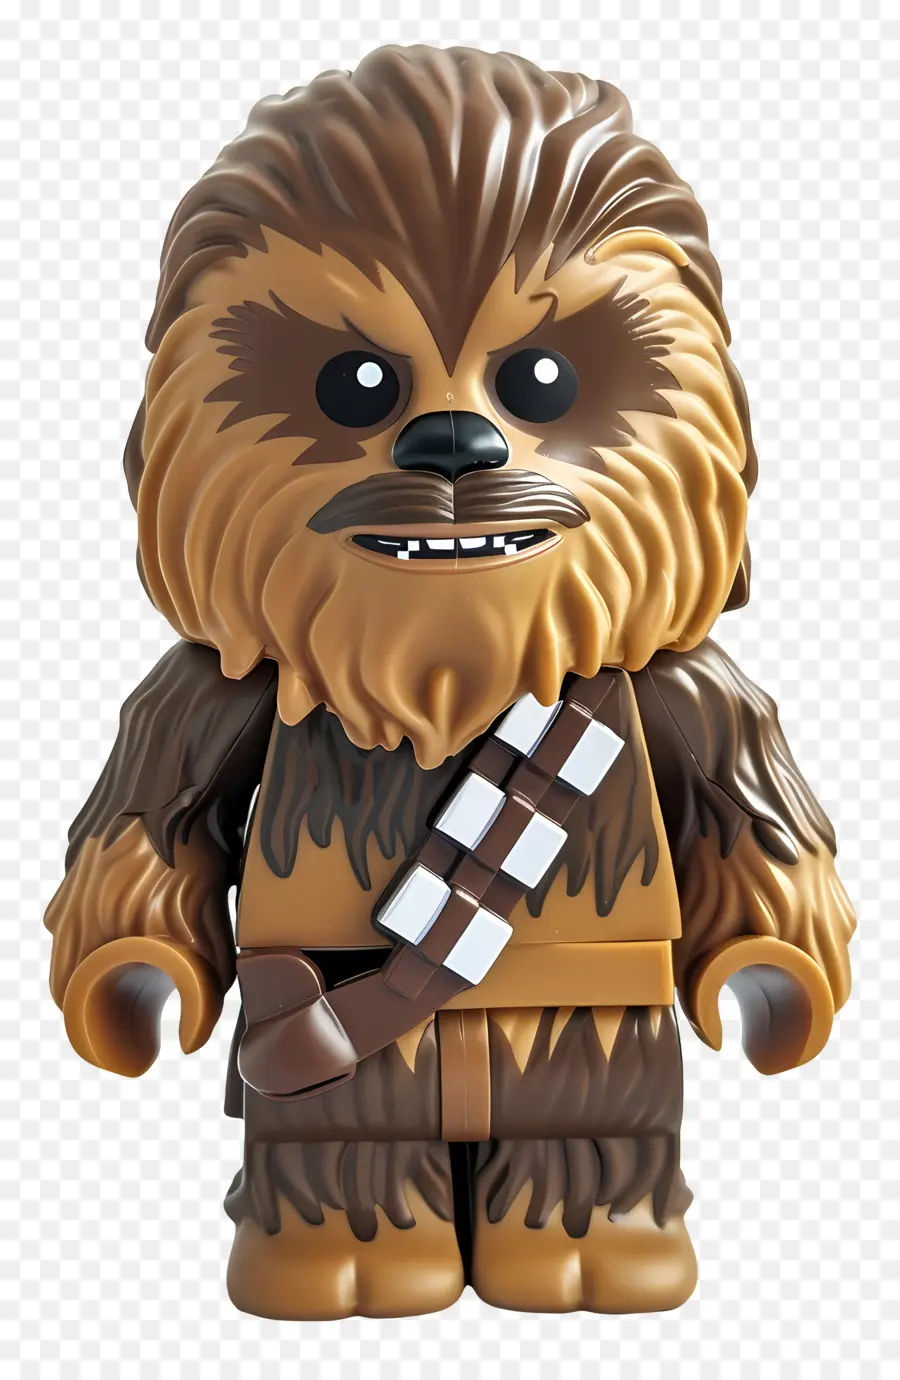 Star Wars - Chewbacca von Star Wars im braunen Pelzanzug